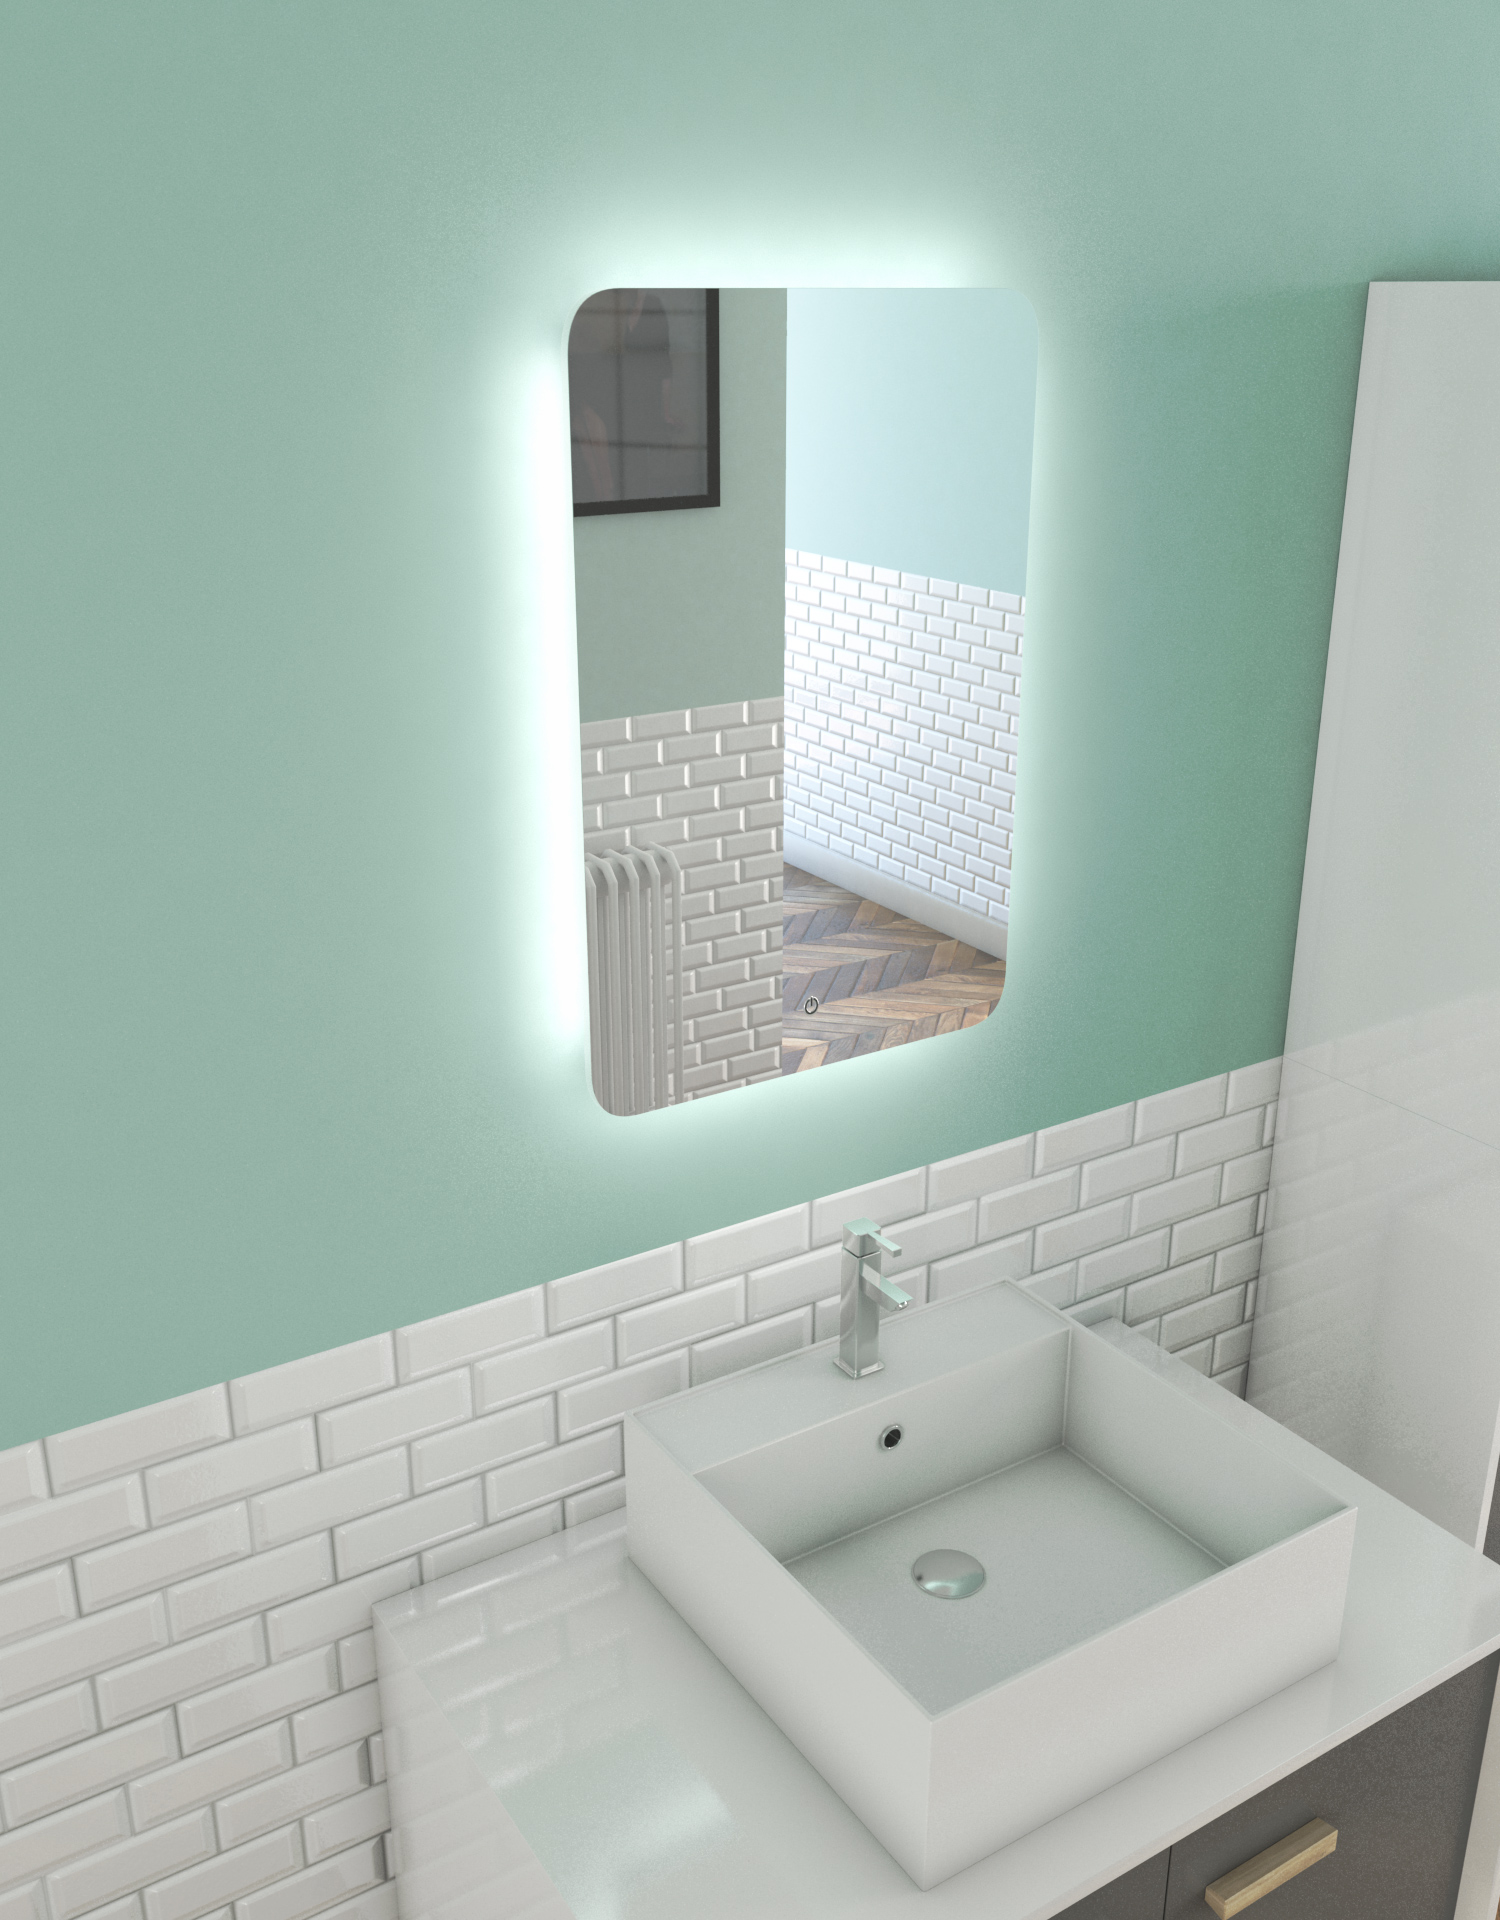 Miroir salle de bain LED auto-éclairant BORDER LINES 70x45 - Aurlane